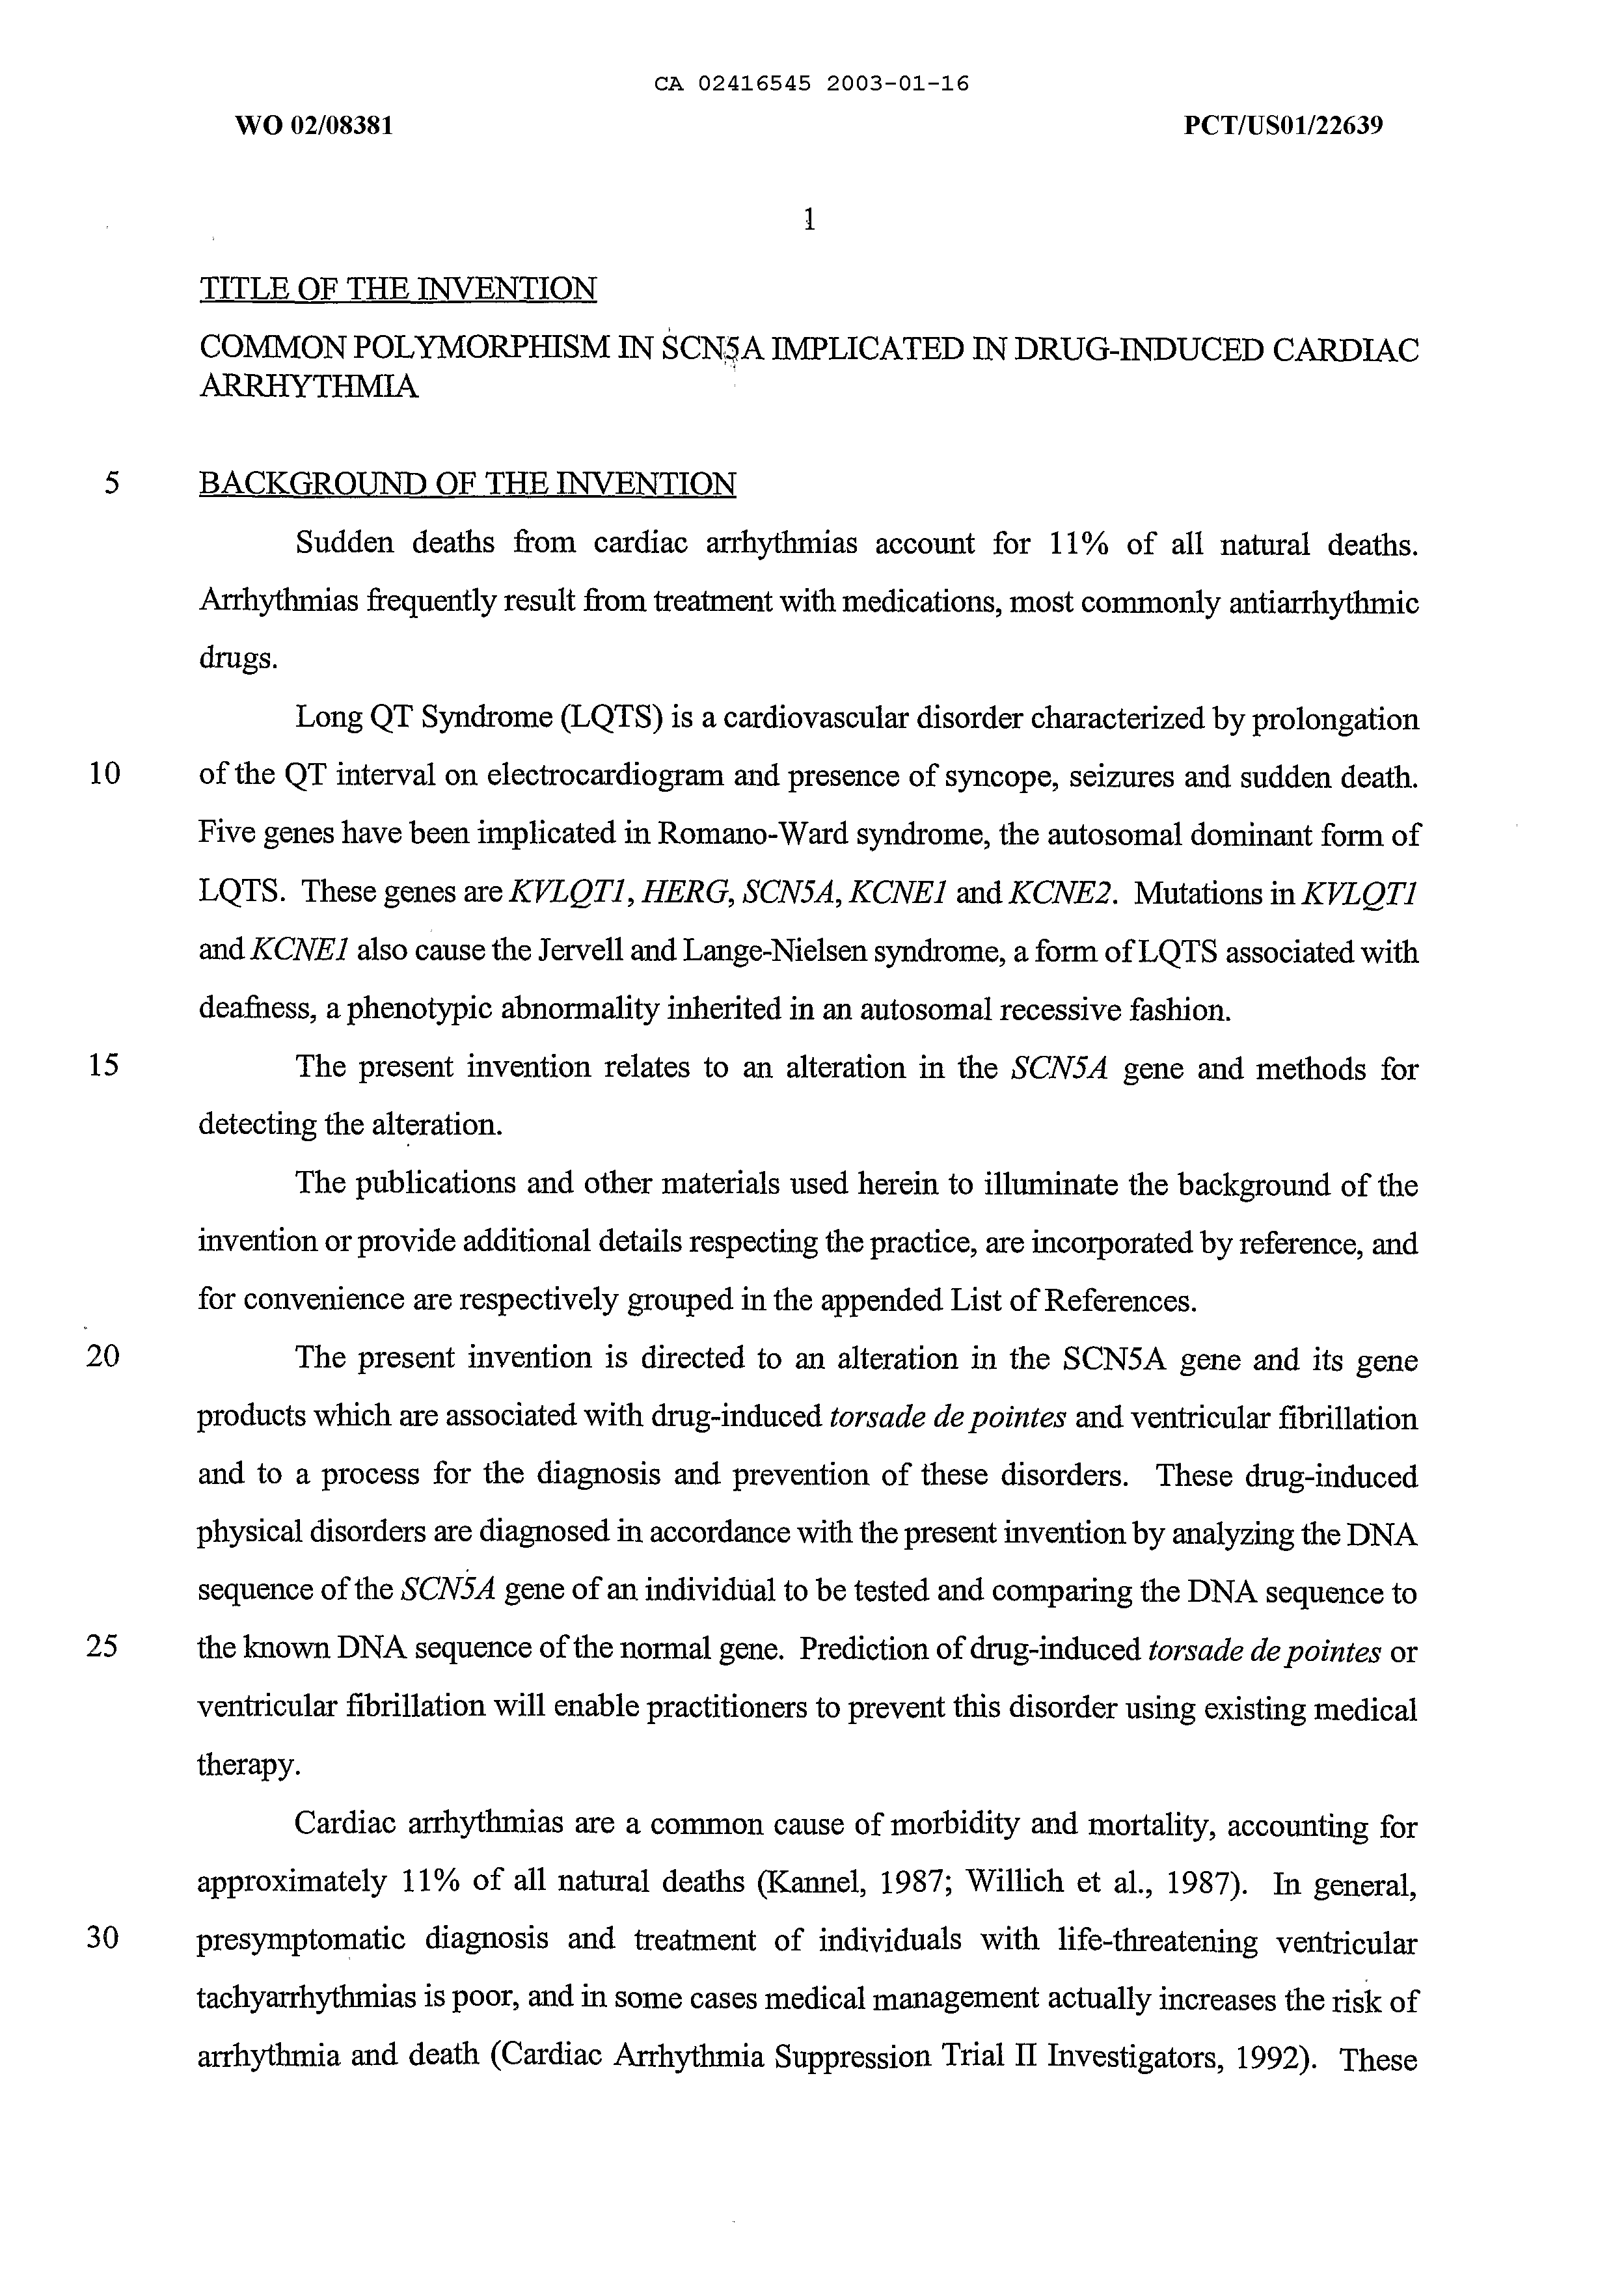 Canadian Patent Document 2416545. Description 20021216. Image 1 of 100